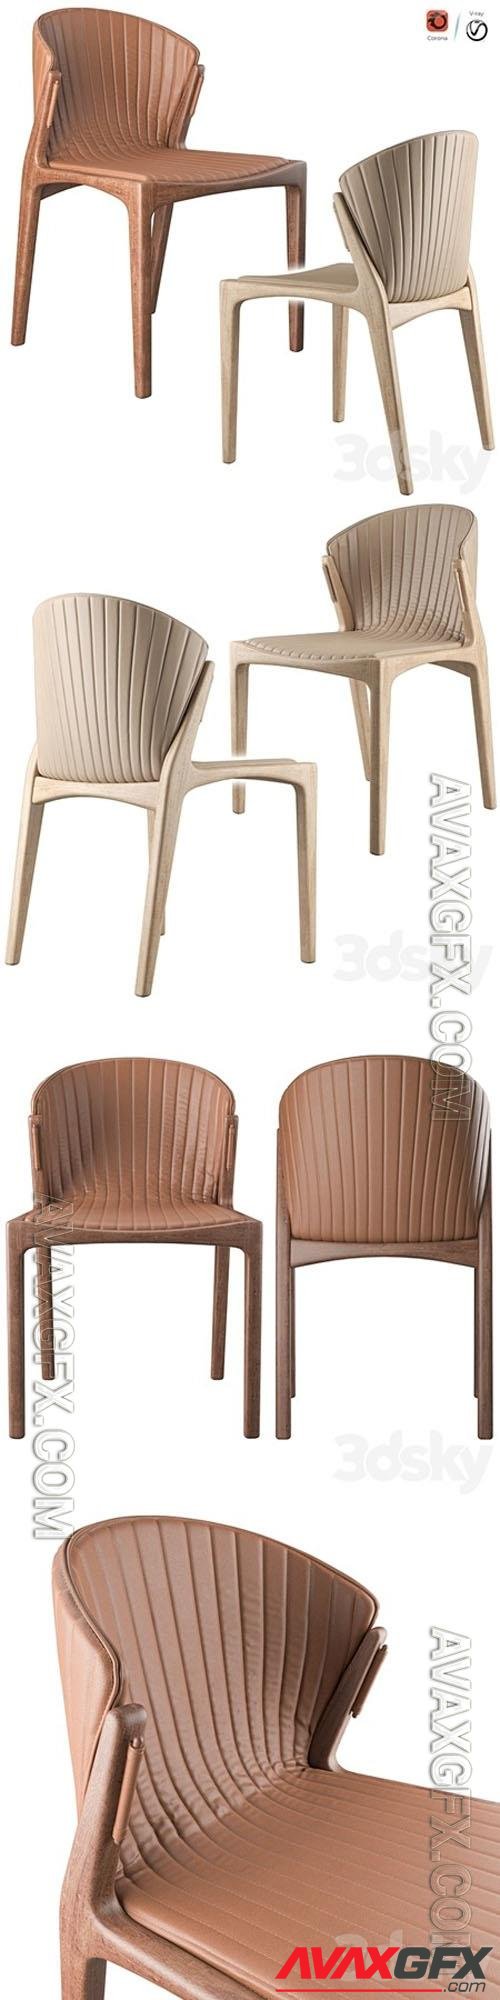 Luisa Chair By Estudiobola - 3d model